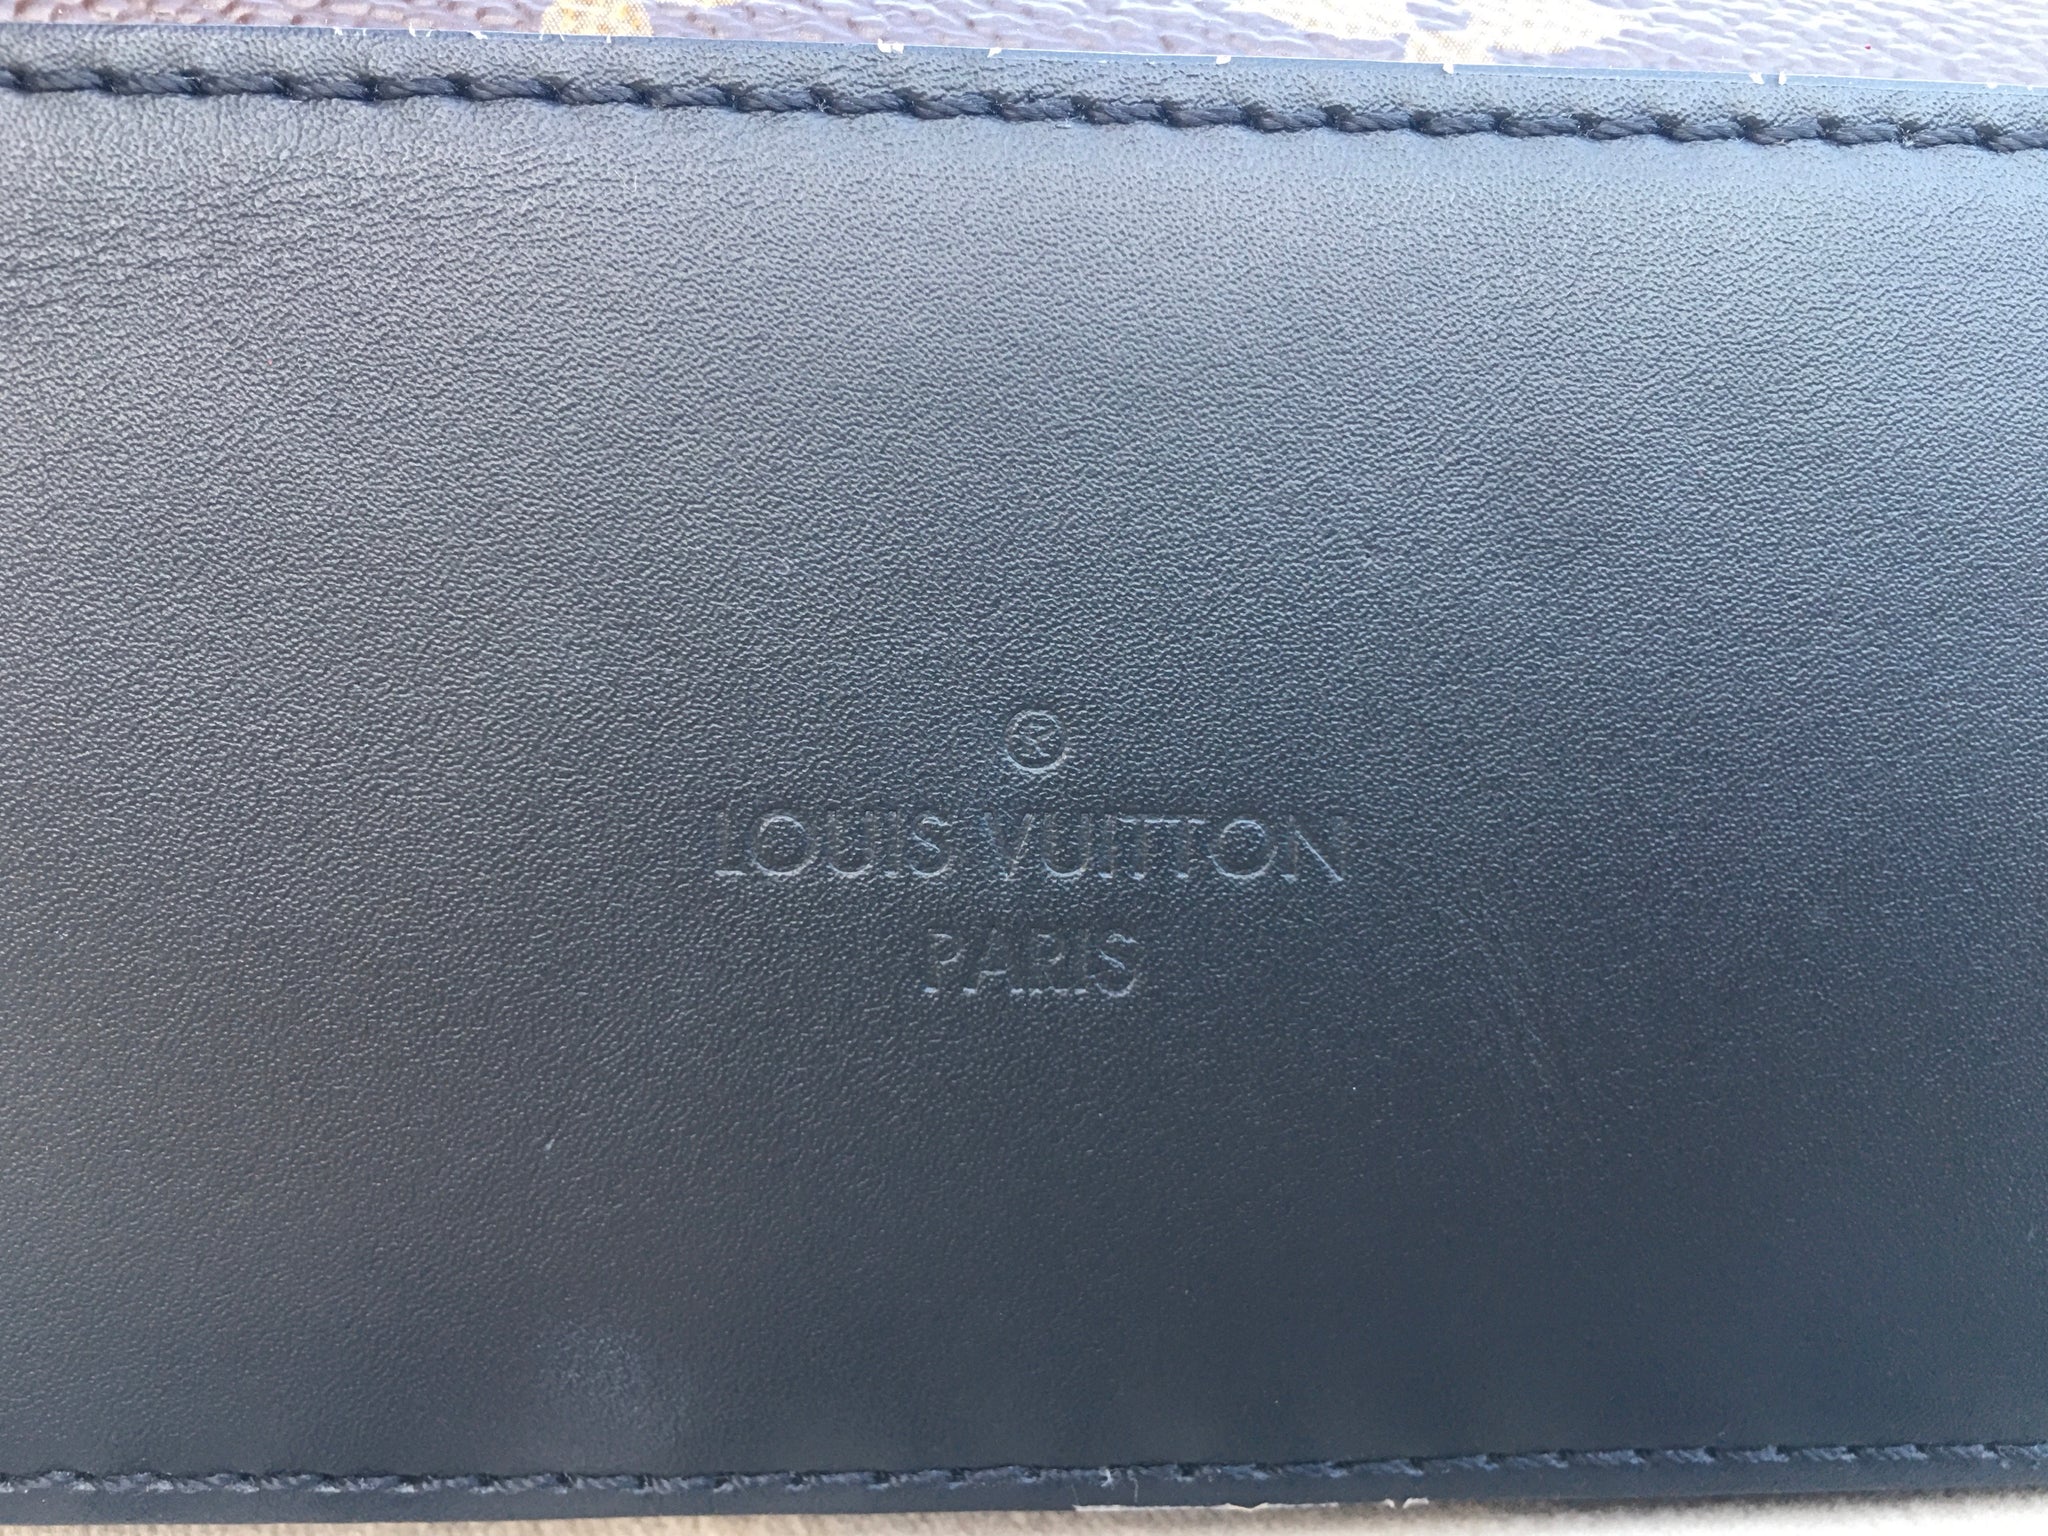 Sac à main Louis Vuitton Salsa en toile monogram marron et cuir naturel, Brown Louis Vuitton Monogram Saintonge Crossbody Bag